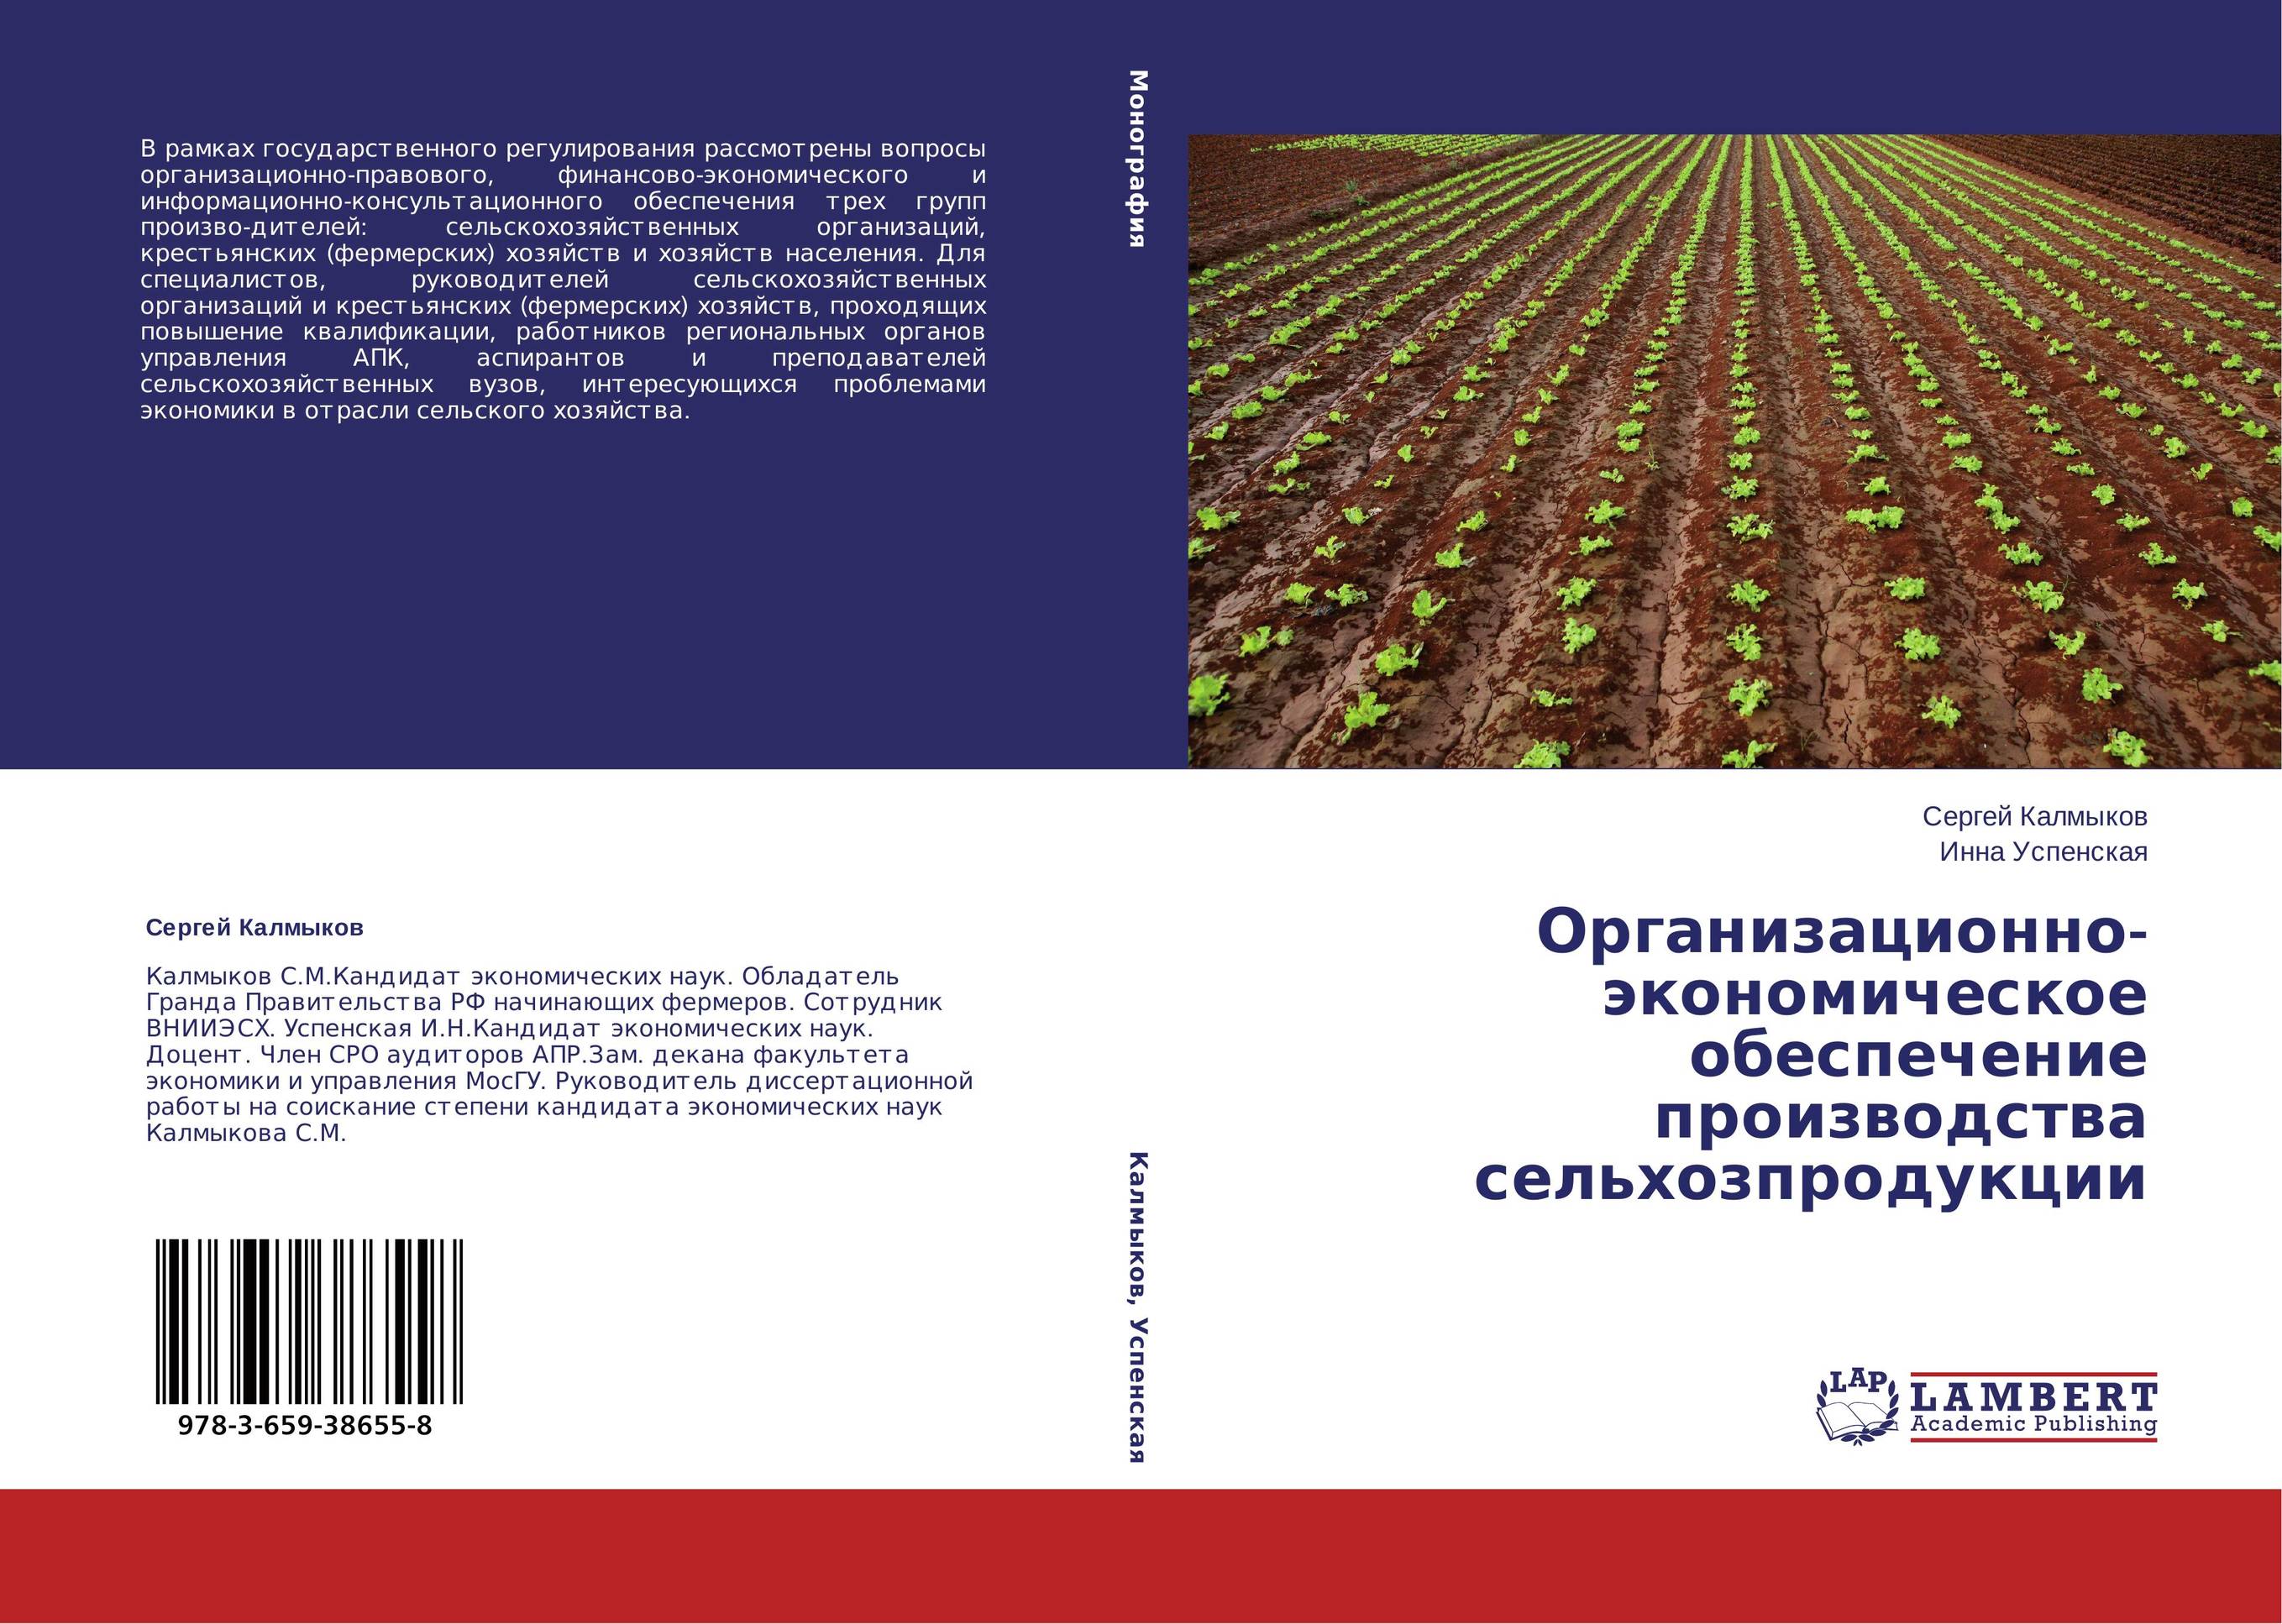 Организационно-экономическое обеспечение производства сельхозпродукции..